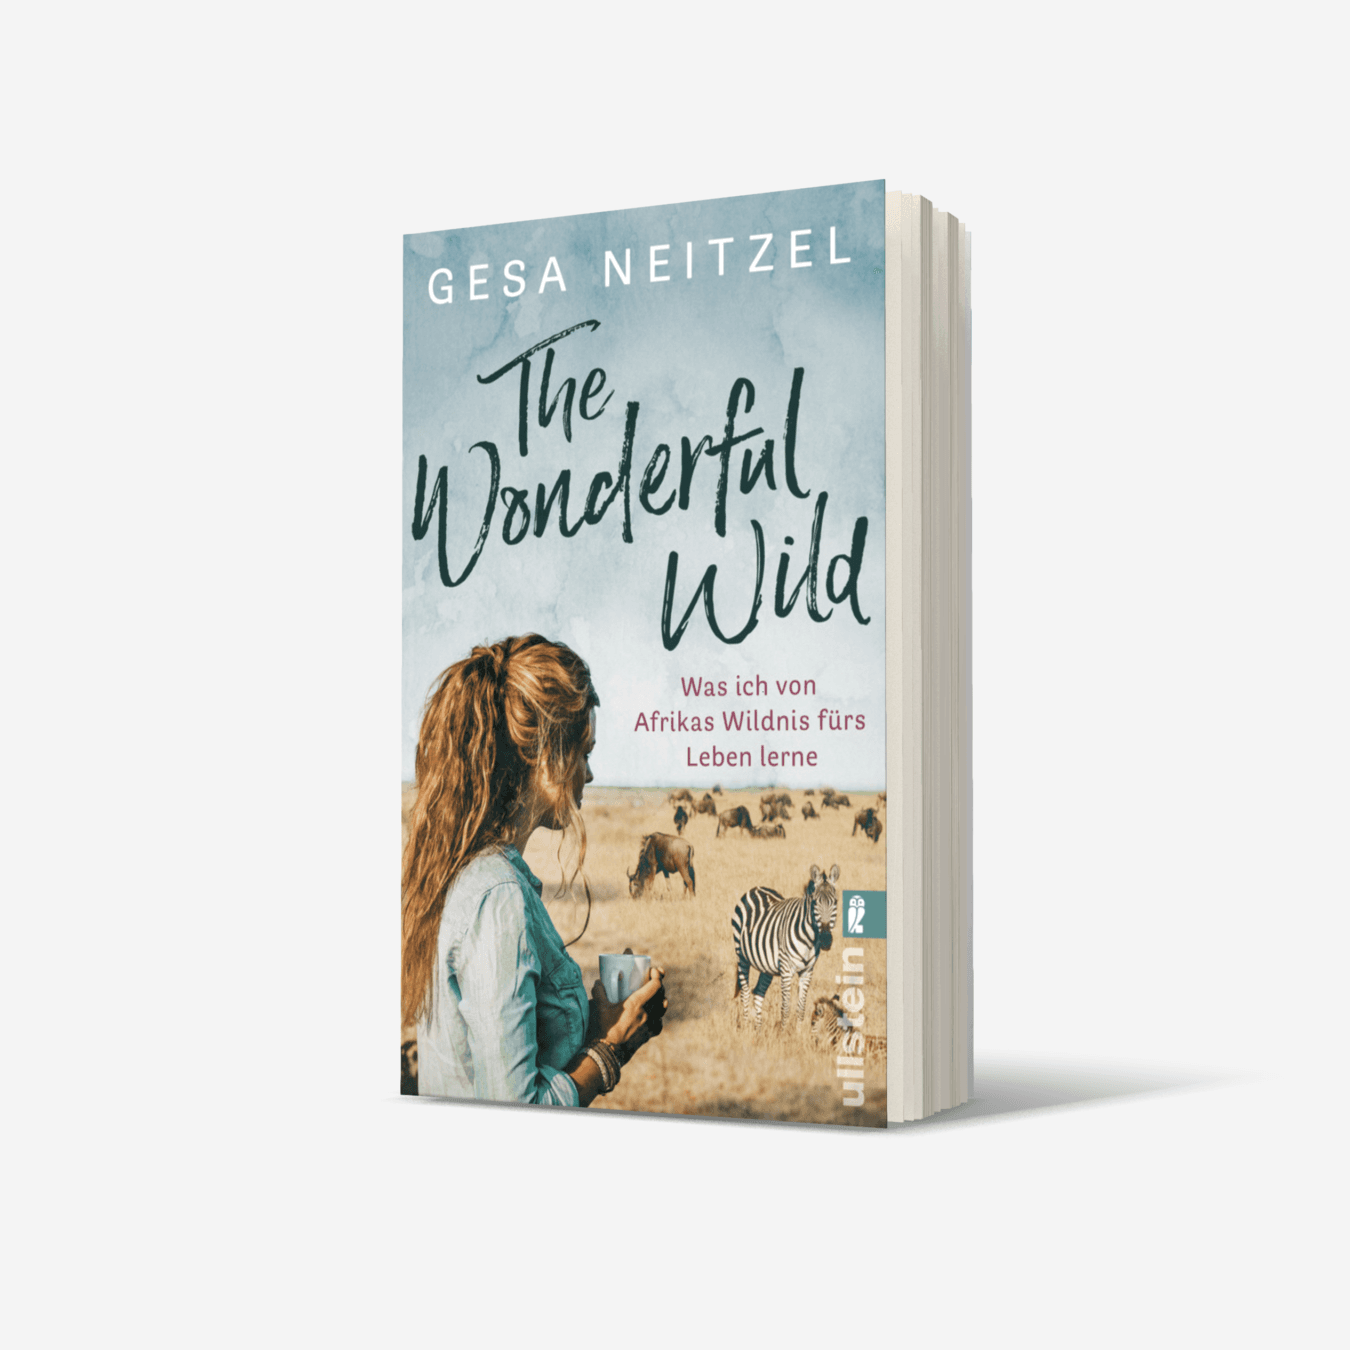 Buchcover von The Wonderful Wild